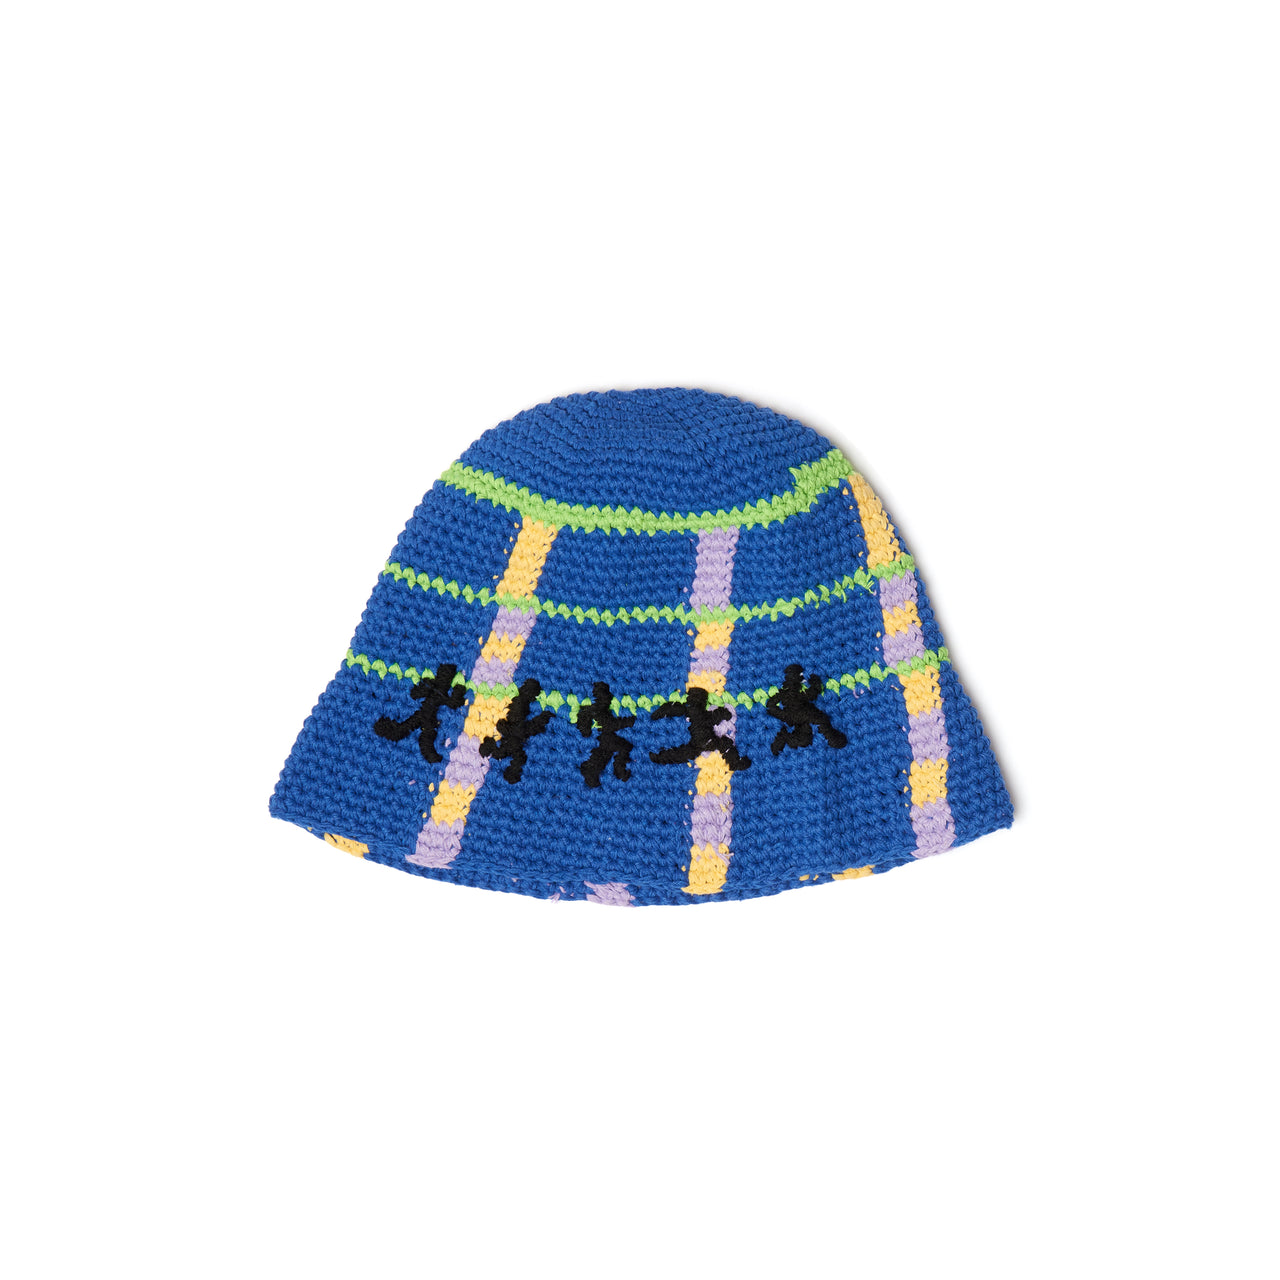 Running Man Crochet Hat [Blue]